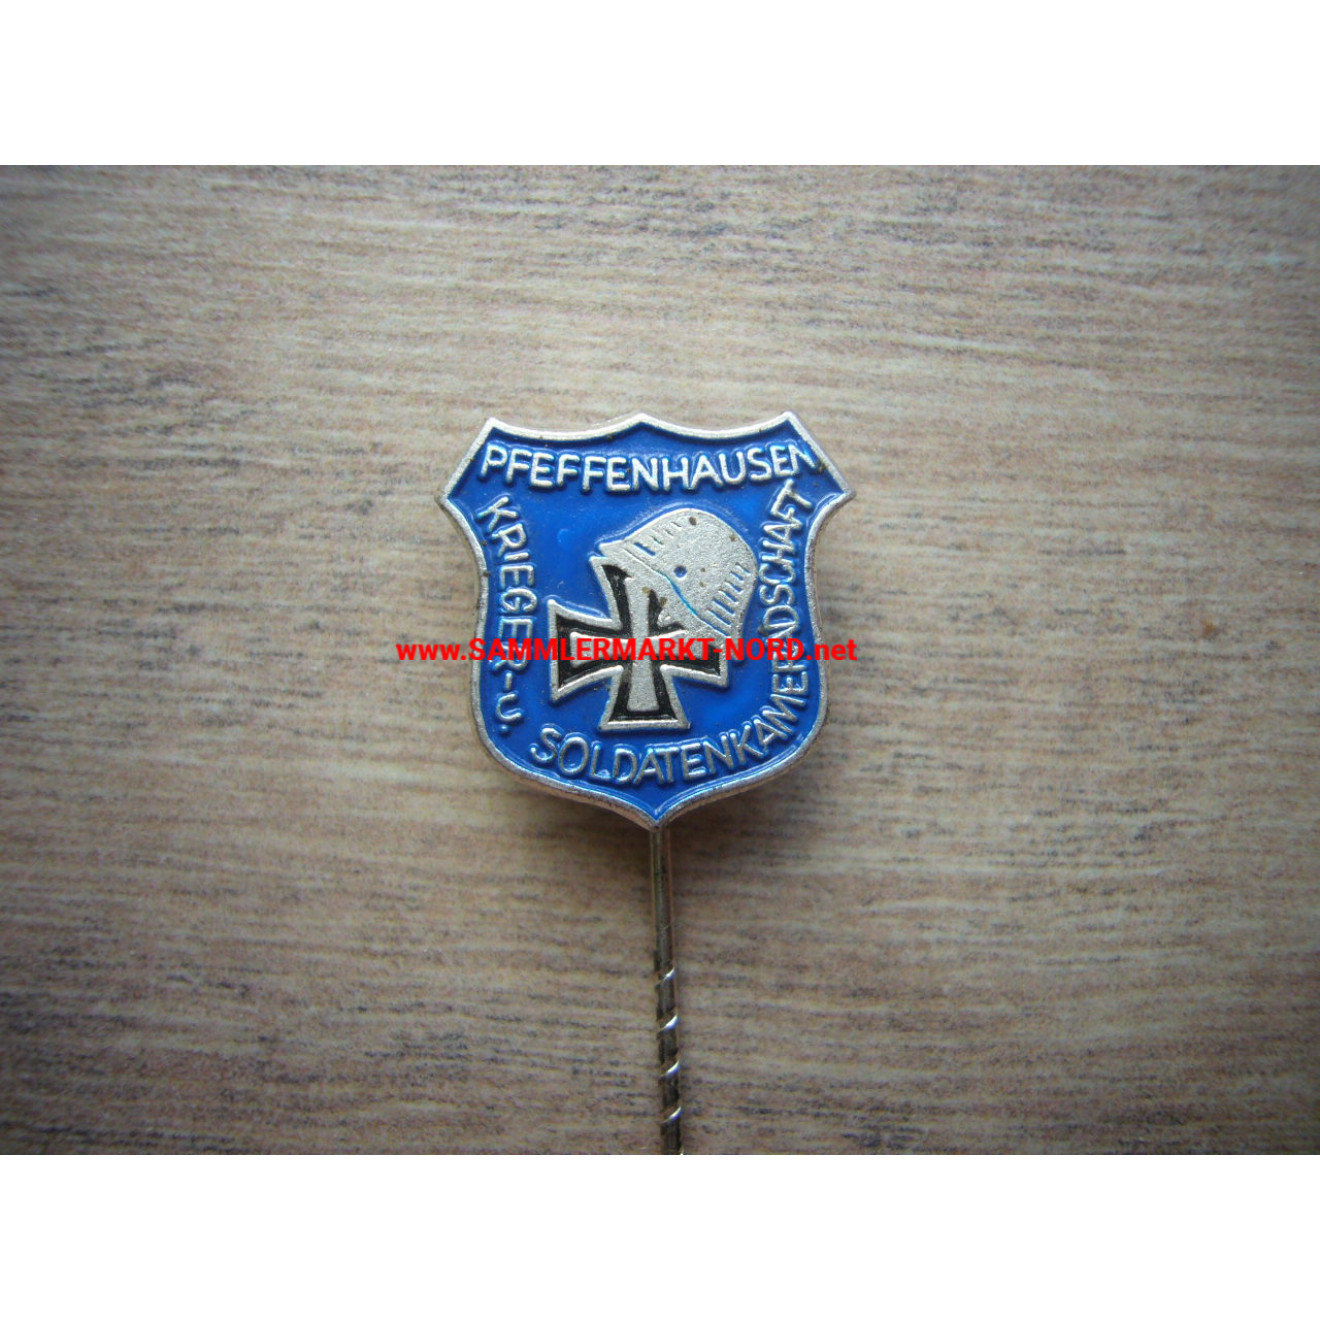 Warriors and soldiers comradeship Pfeffenhausen - membership pin